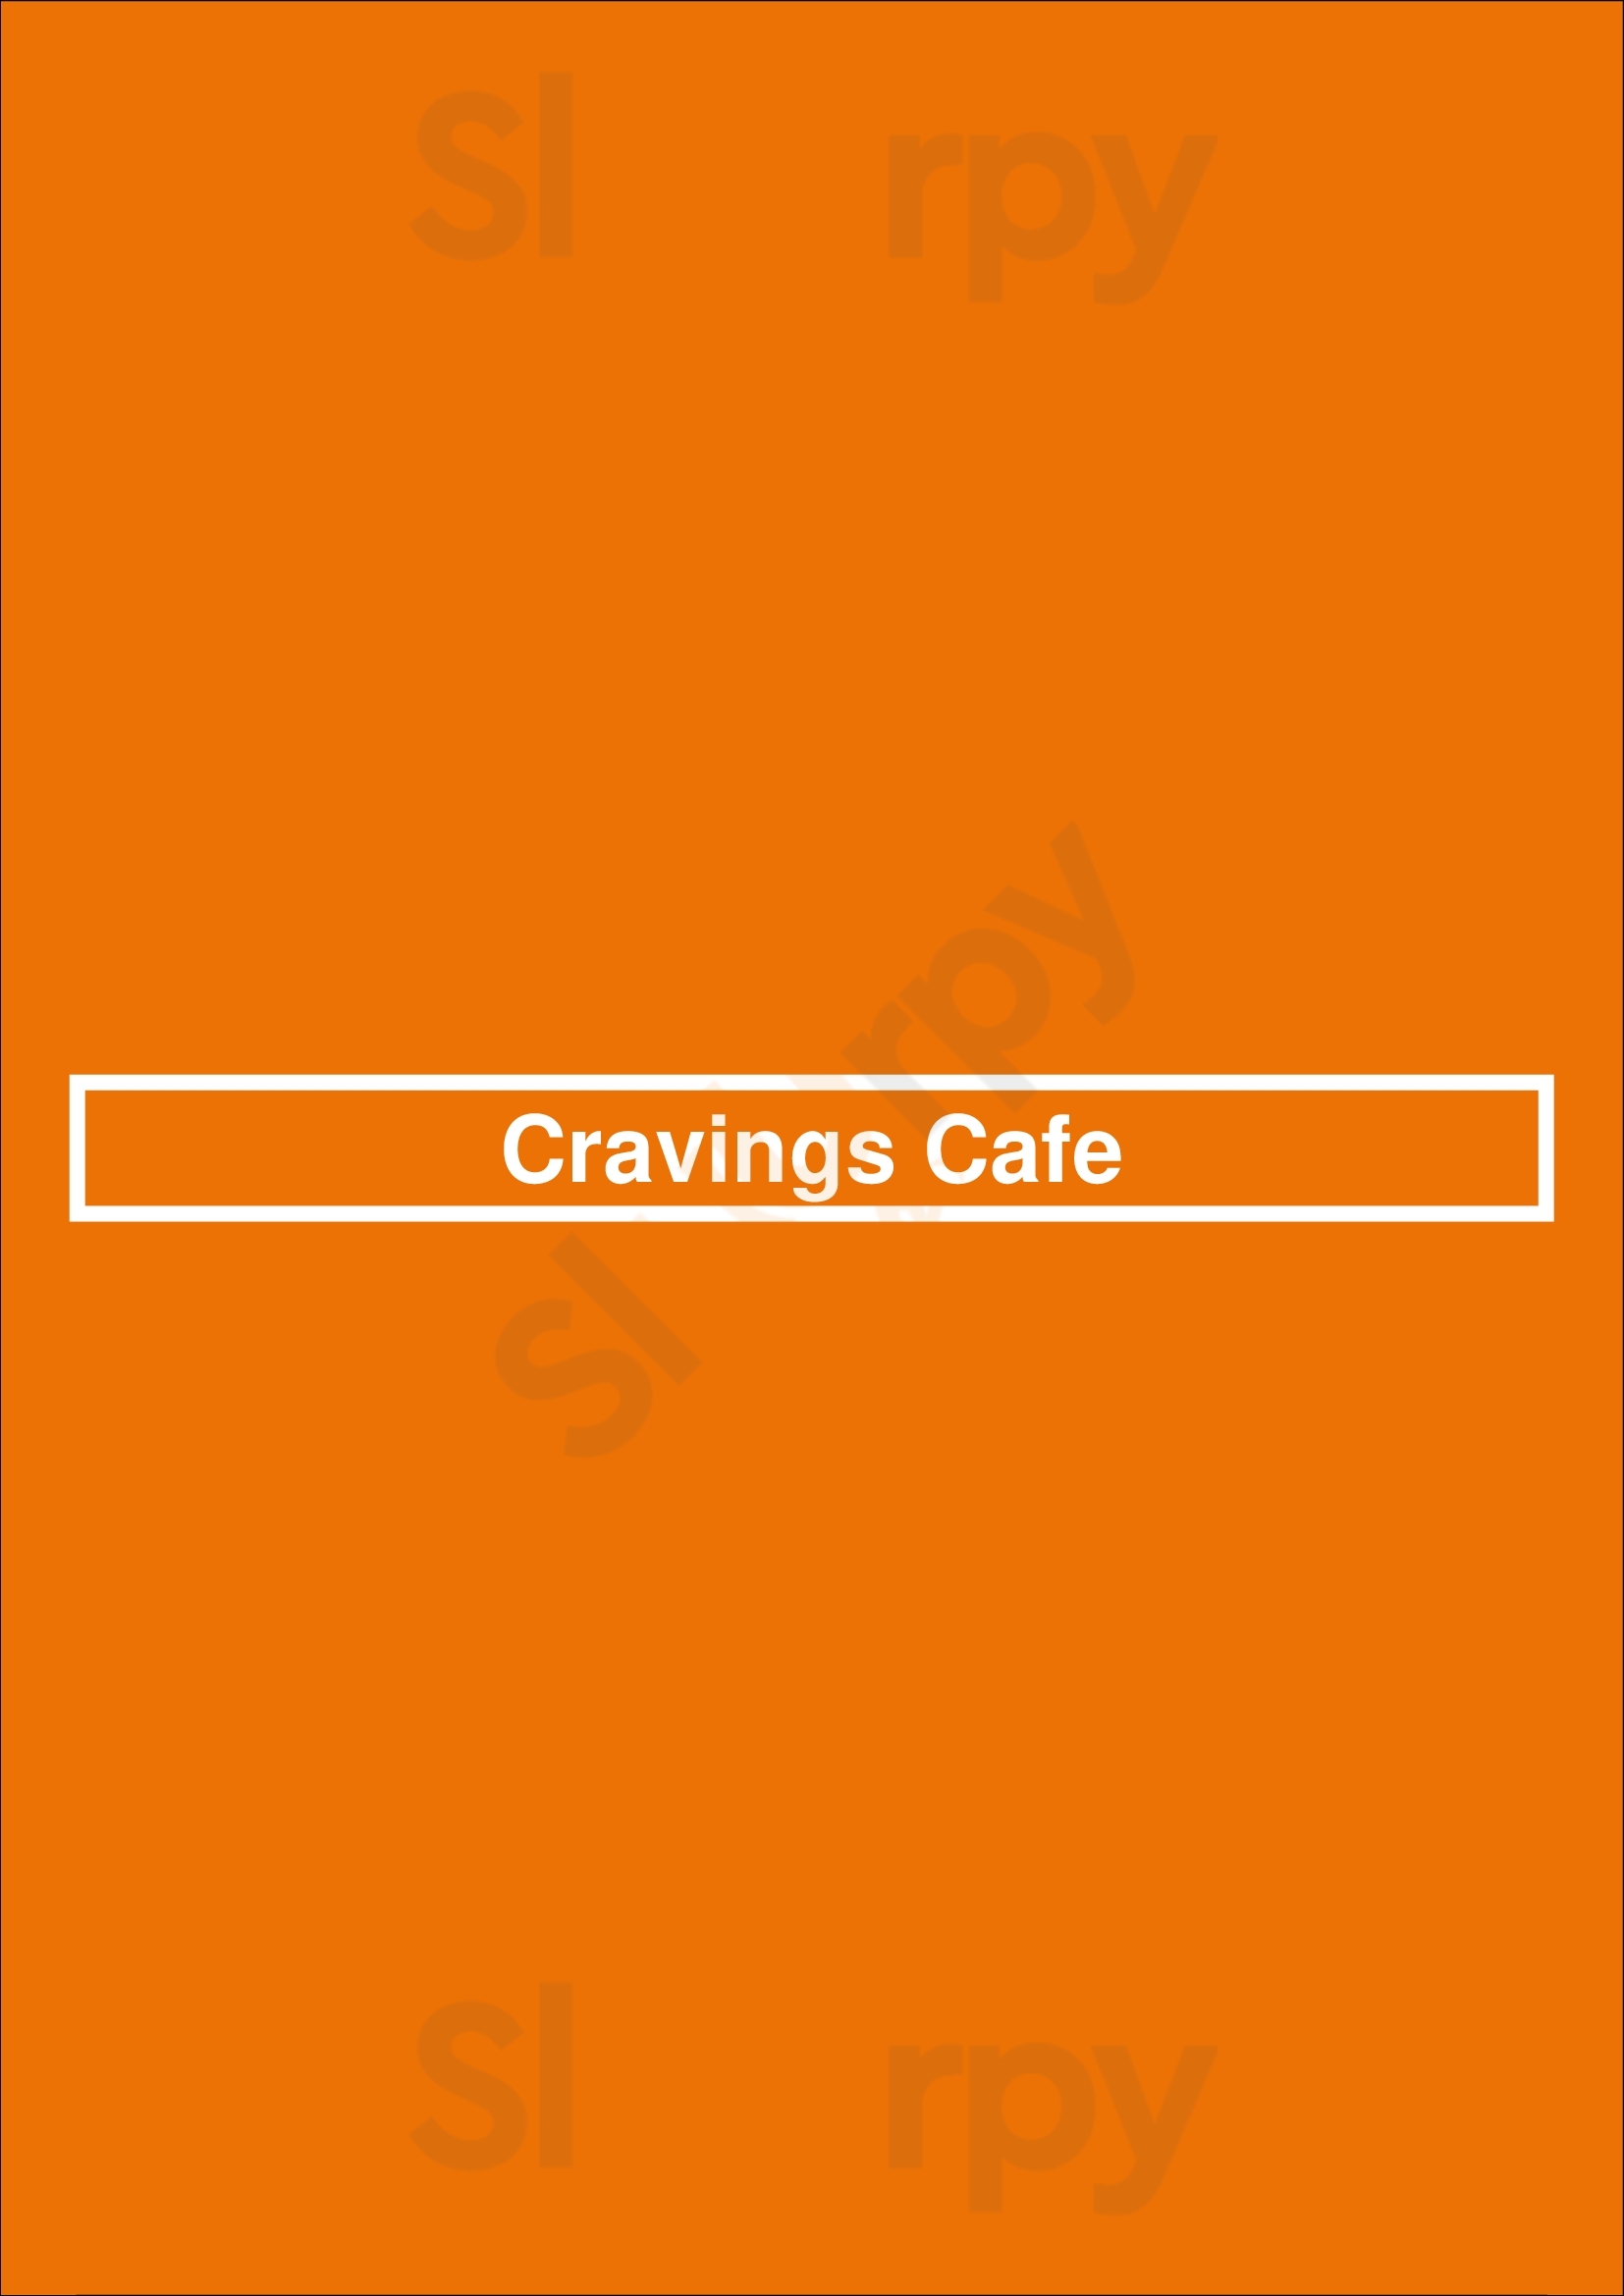 Cravings Cafe London Menu - 1